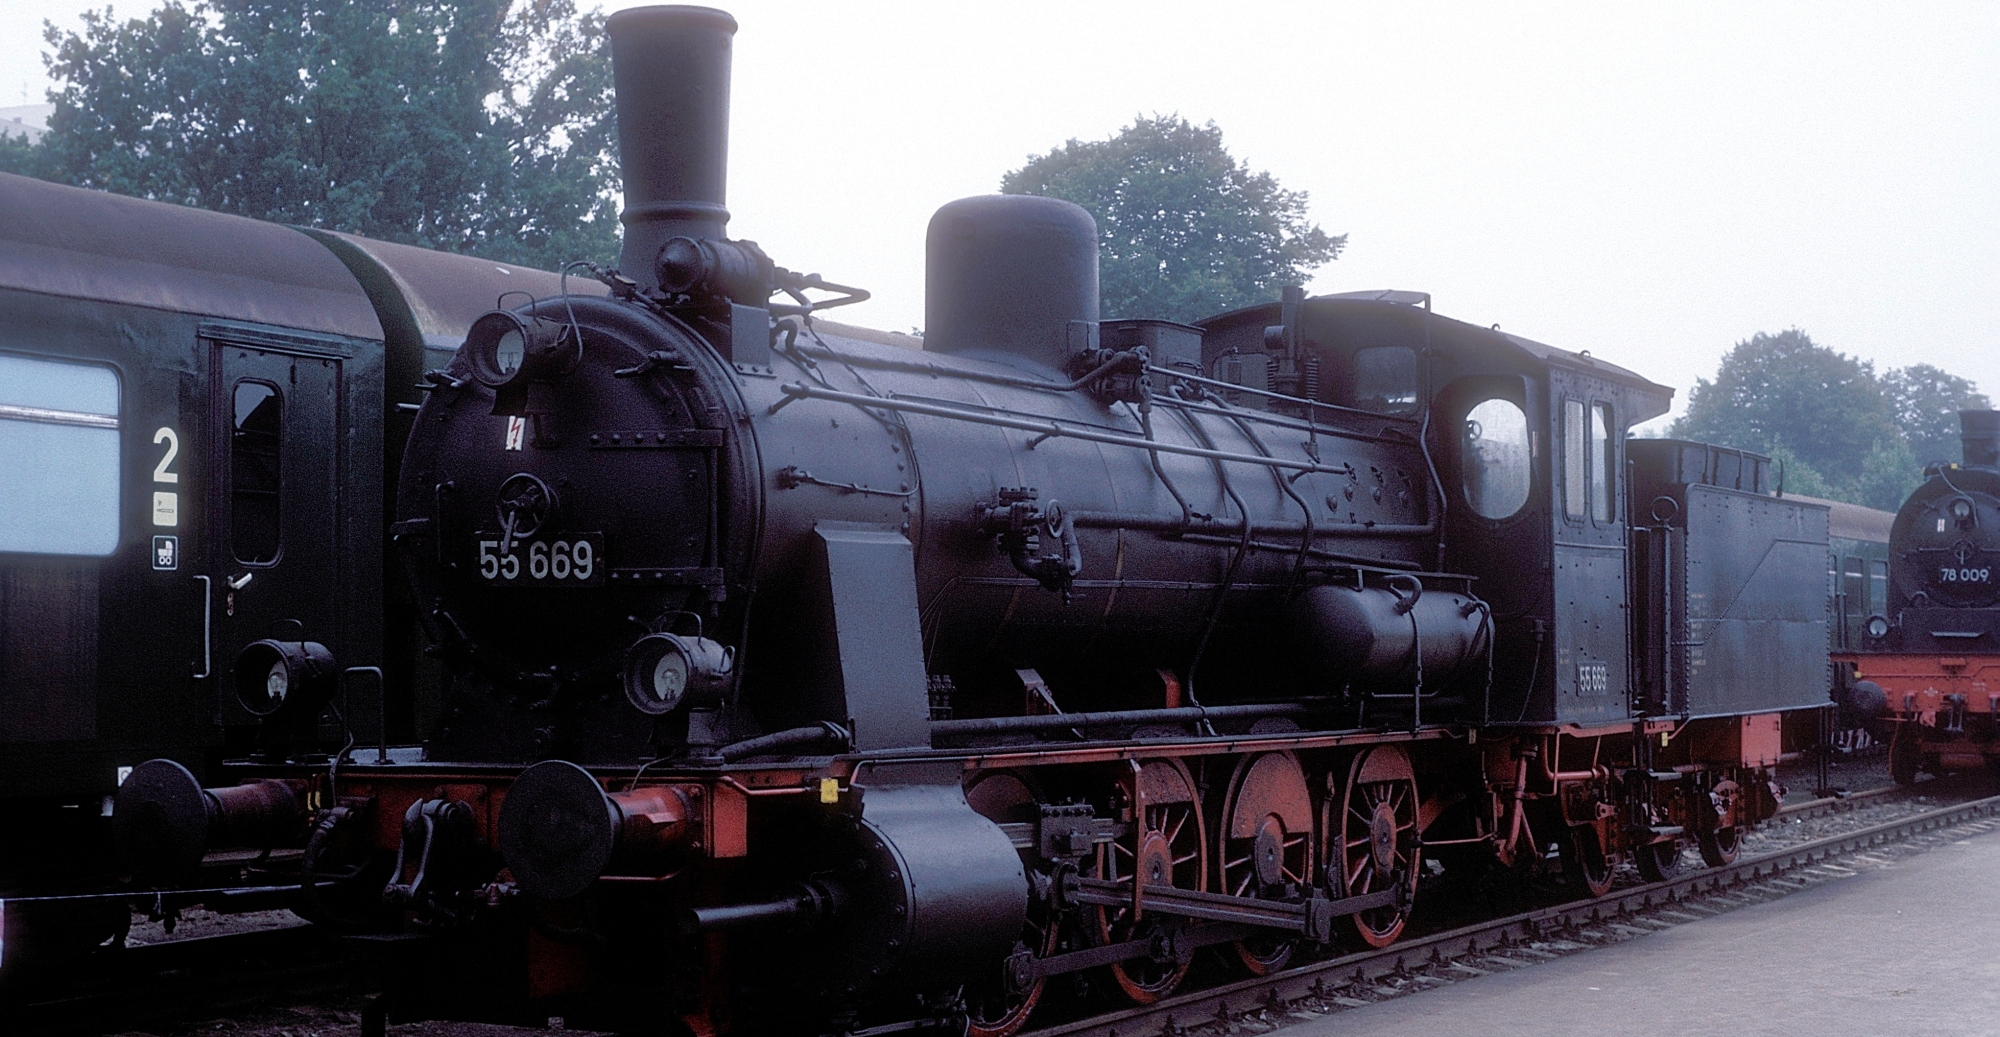 55 669 in September 1988 in Potsdam